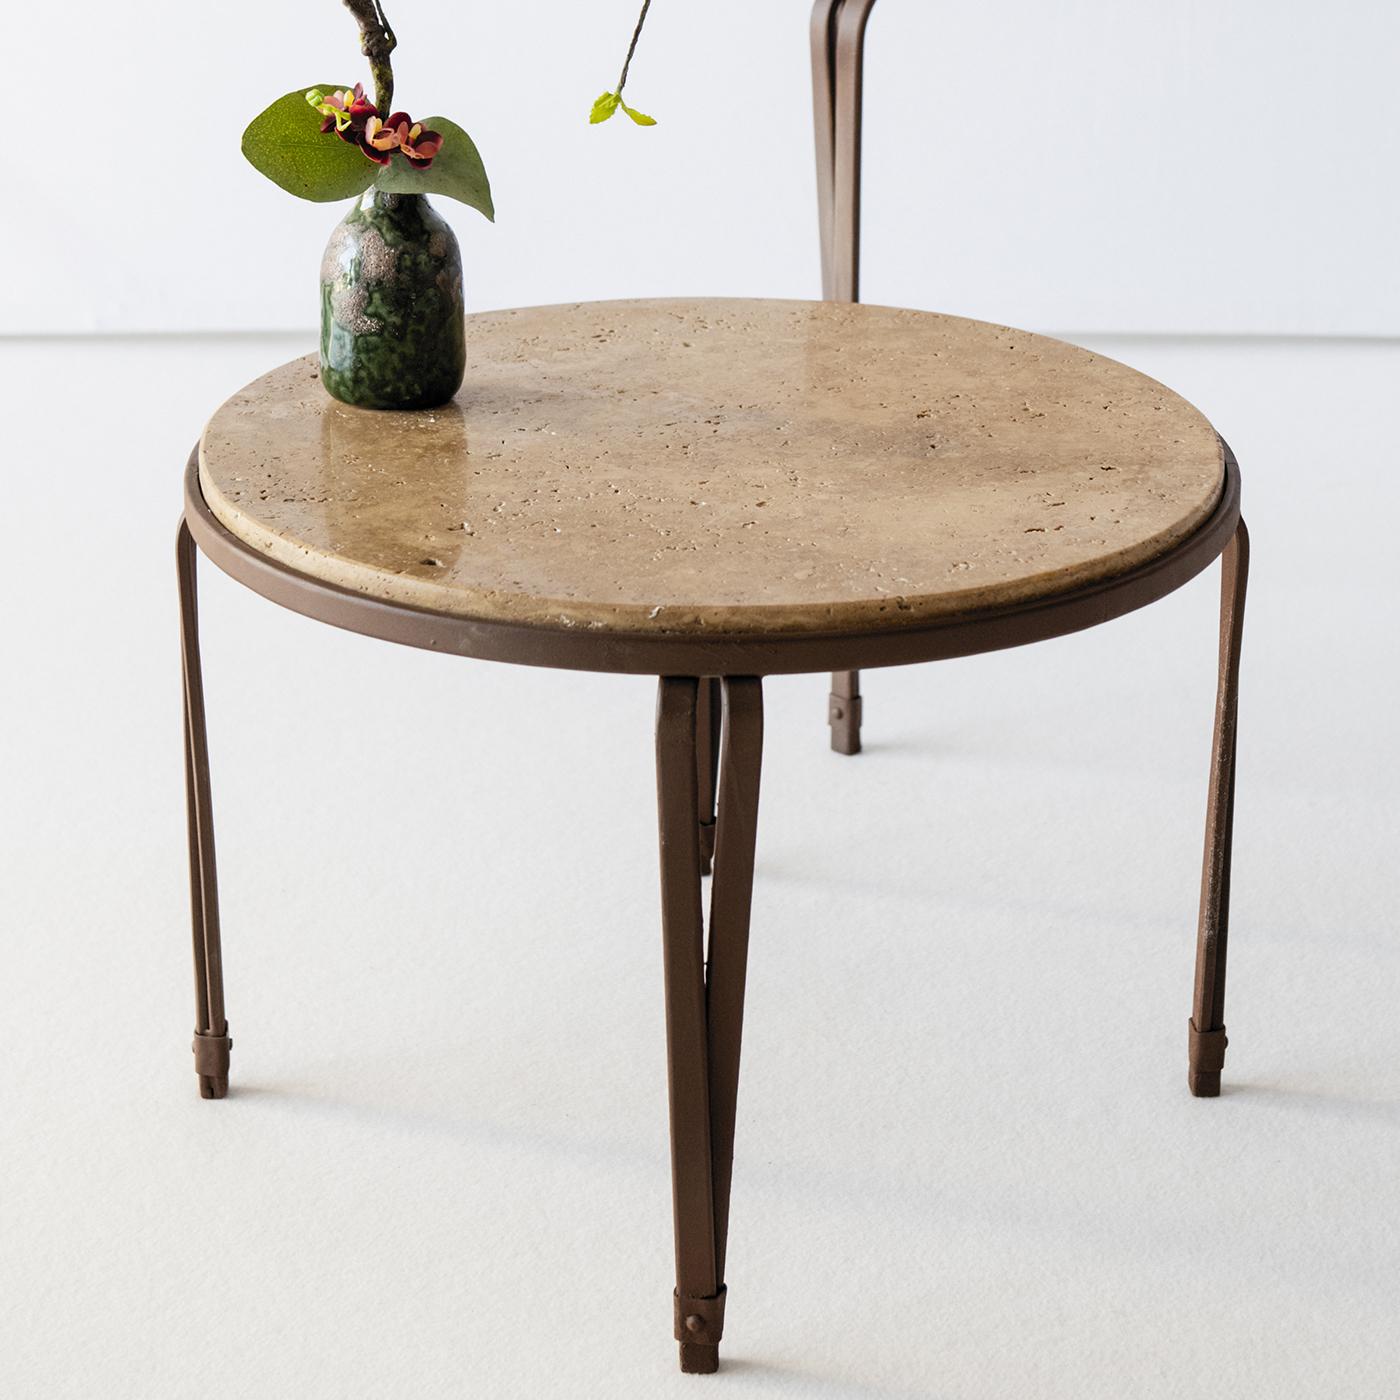 Inspirée des designs florentins traditionnels, la table basse Marina est dotée d'une belle base en acier inoxydable. Surmontée d'un plateau en travertin noyer, cette table d'extérieur est définie par des lignes épurées pour une allure intemporelle.